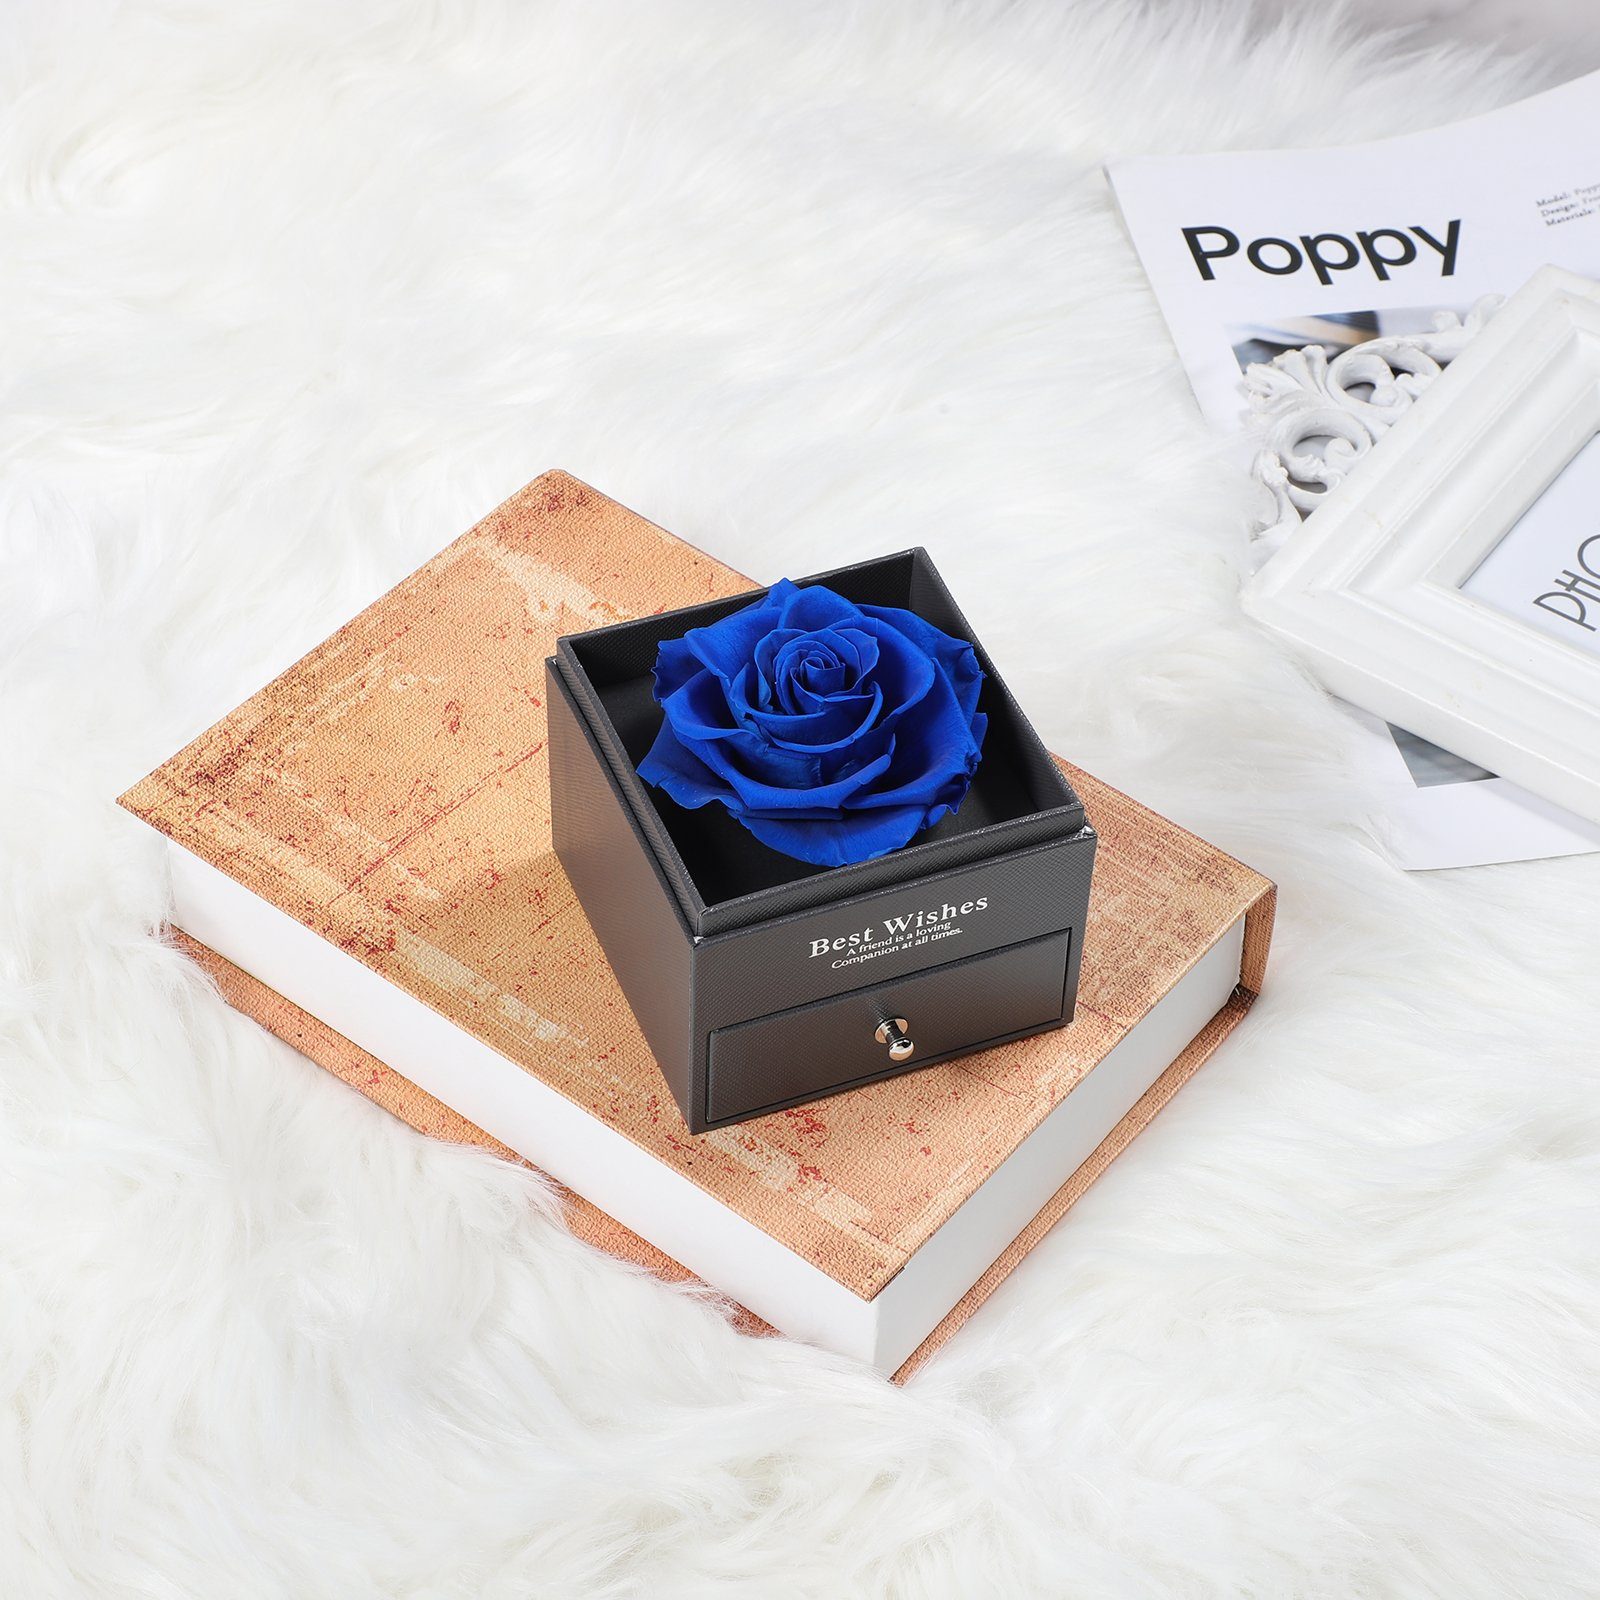 vorschlagen, Schmuckkästchen Weihnachten Blau Schublade Rosen, mit Kunstblume Jahrestag für Rosnek, Valentinstag Konservierte